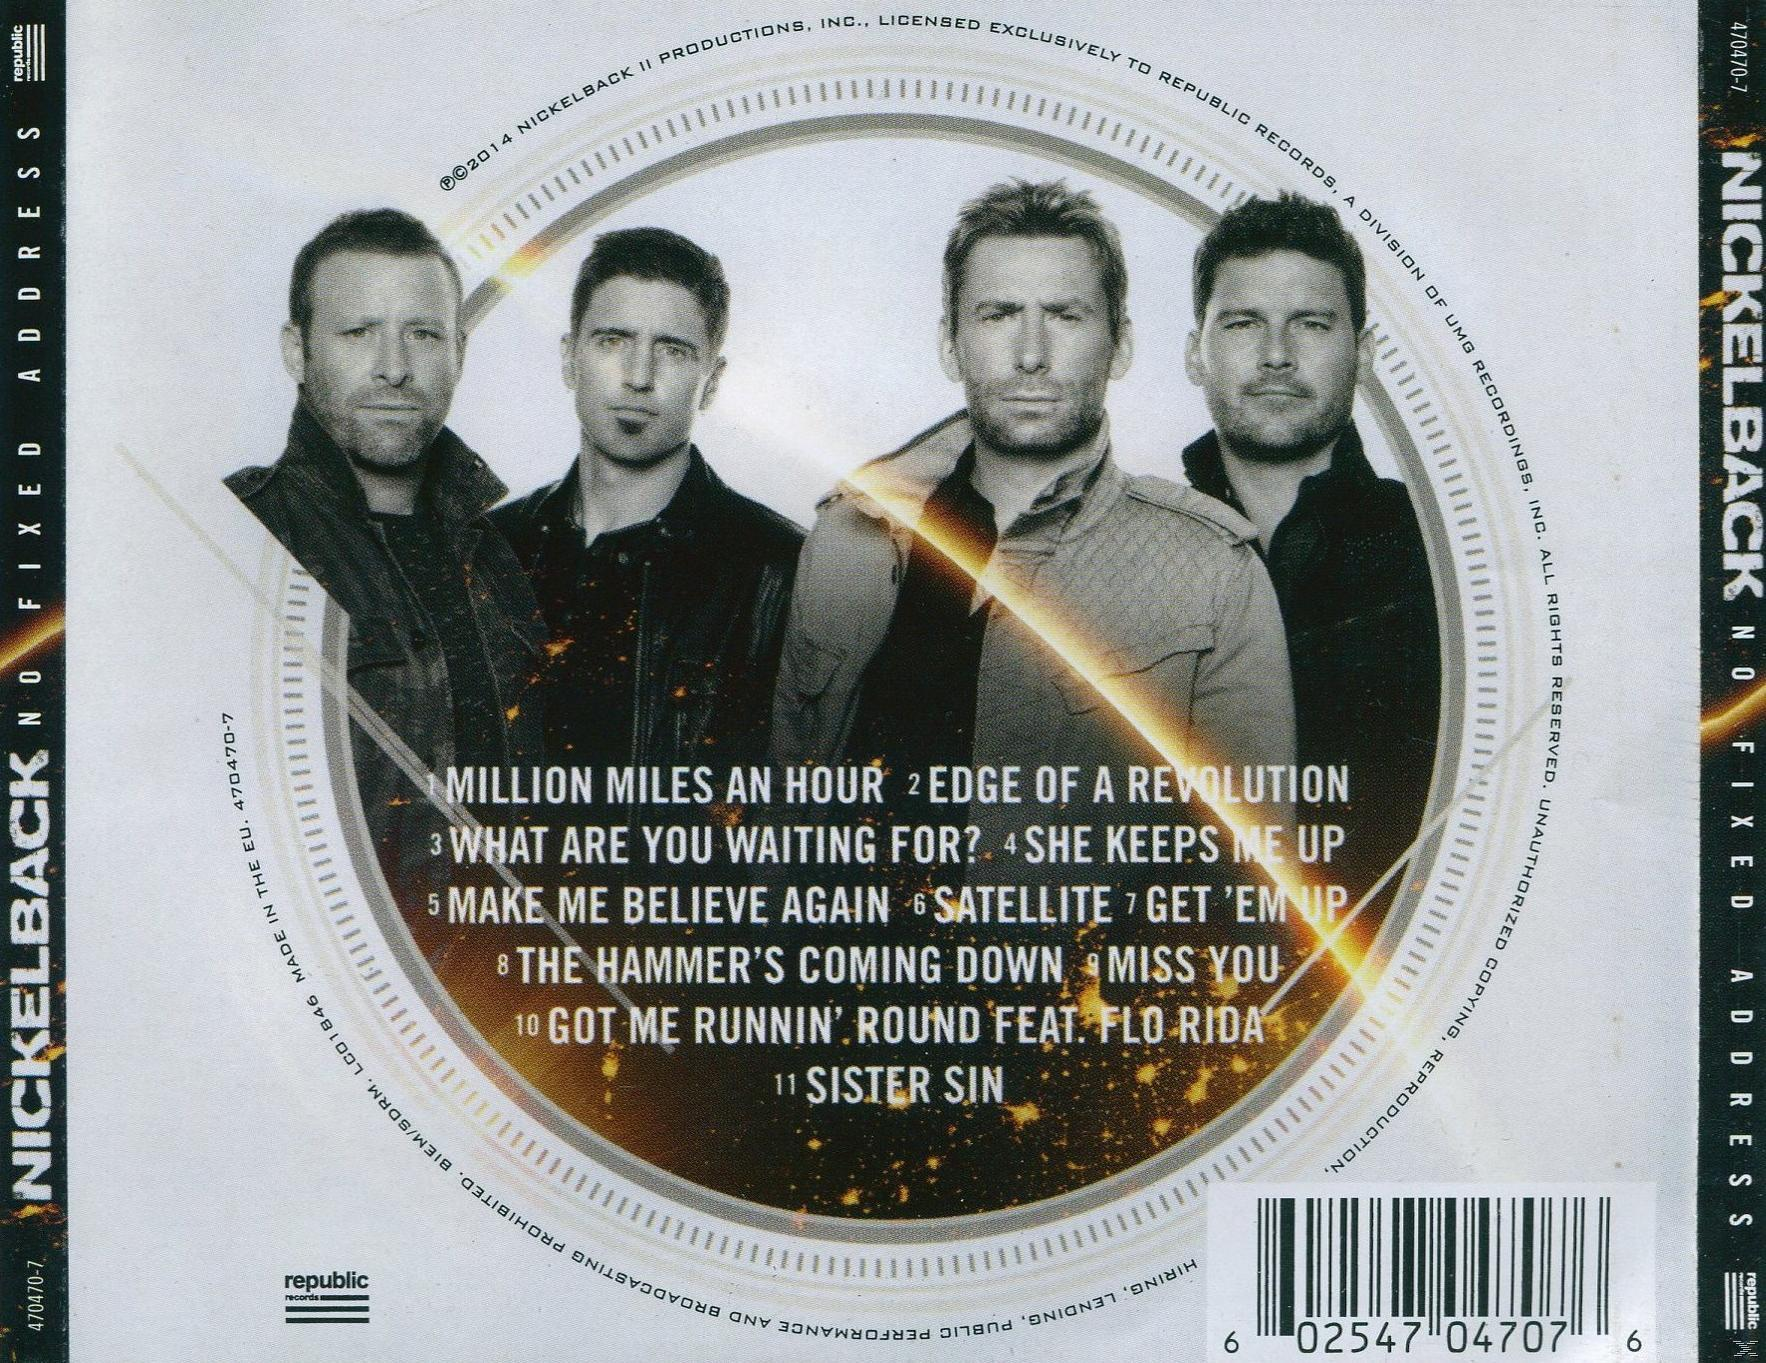 Nickelback - No Fixed Address - (CD)